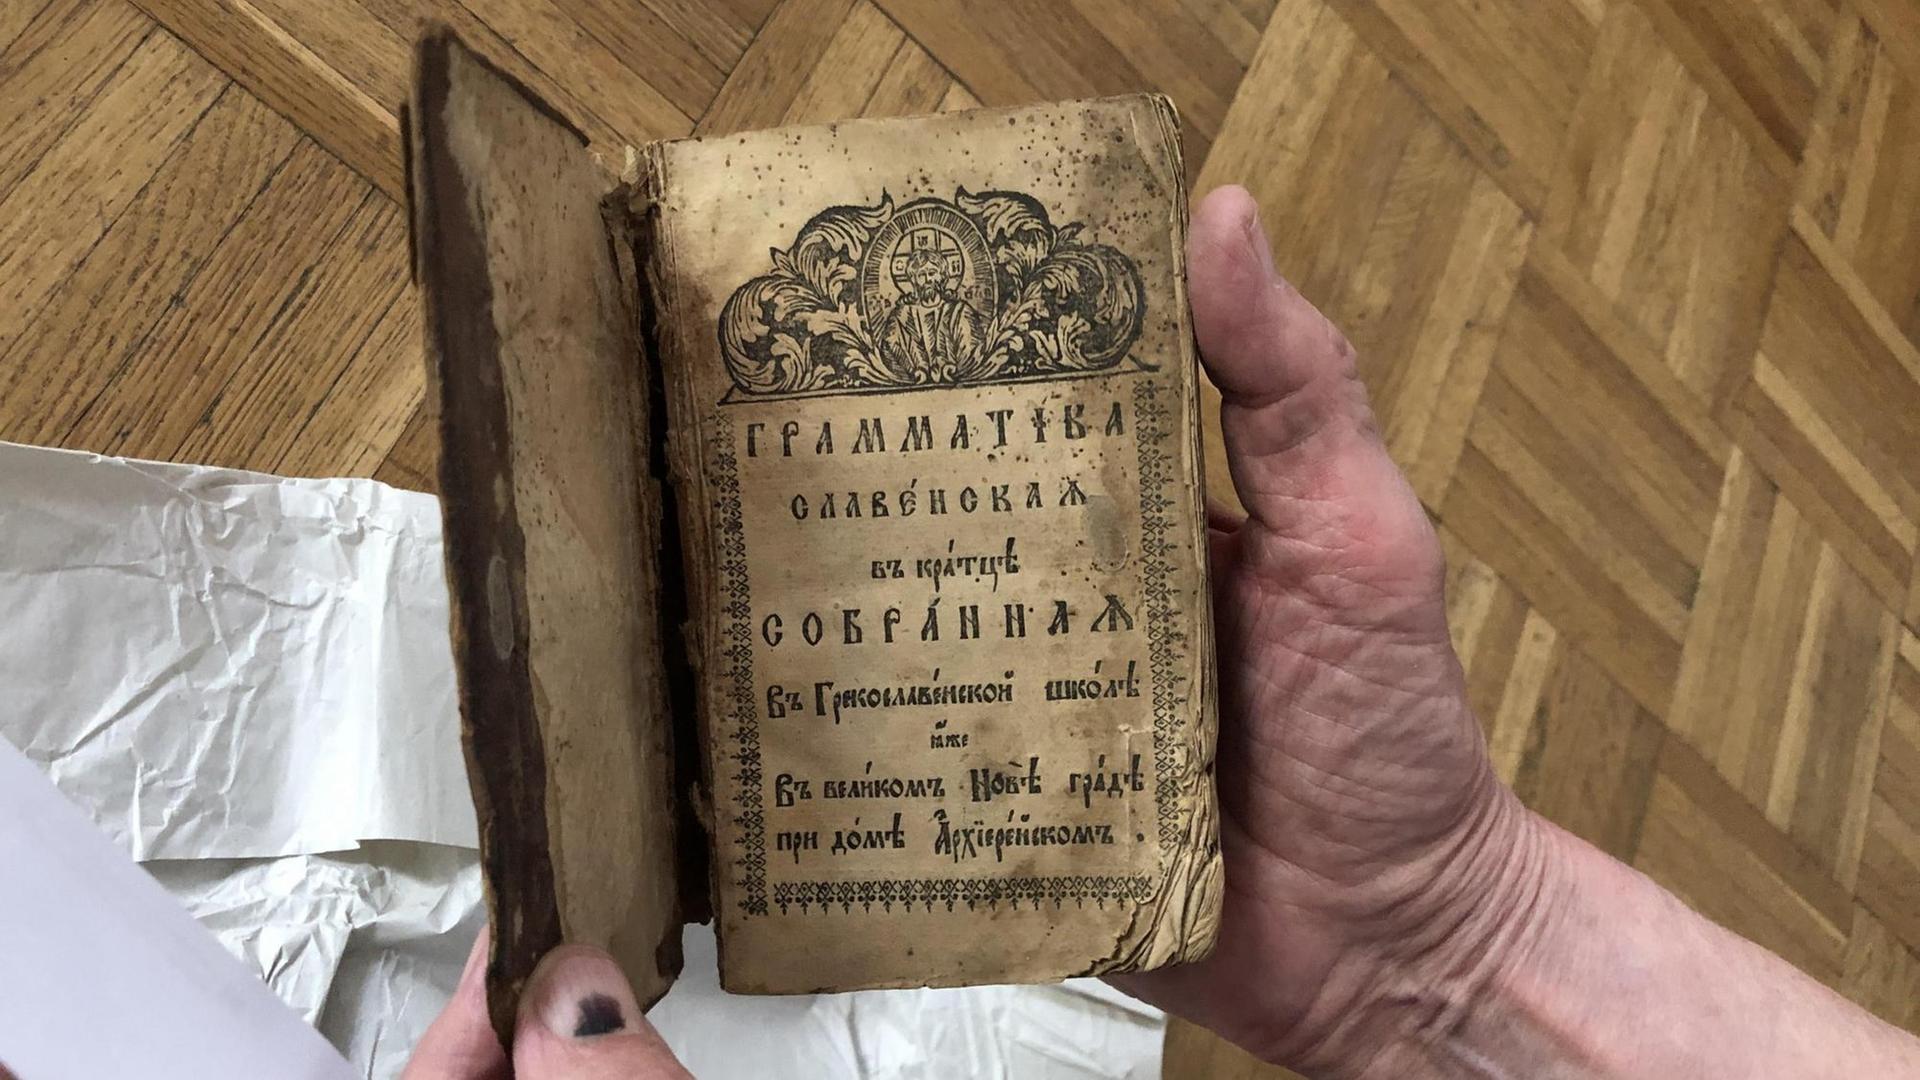 Das älteste in der Sammlung der geraubten Bücher: eine russische Grammatik, vermutlich aus dem 17. Jahrhundert.